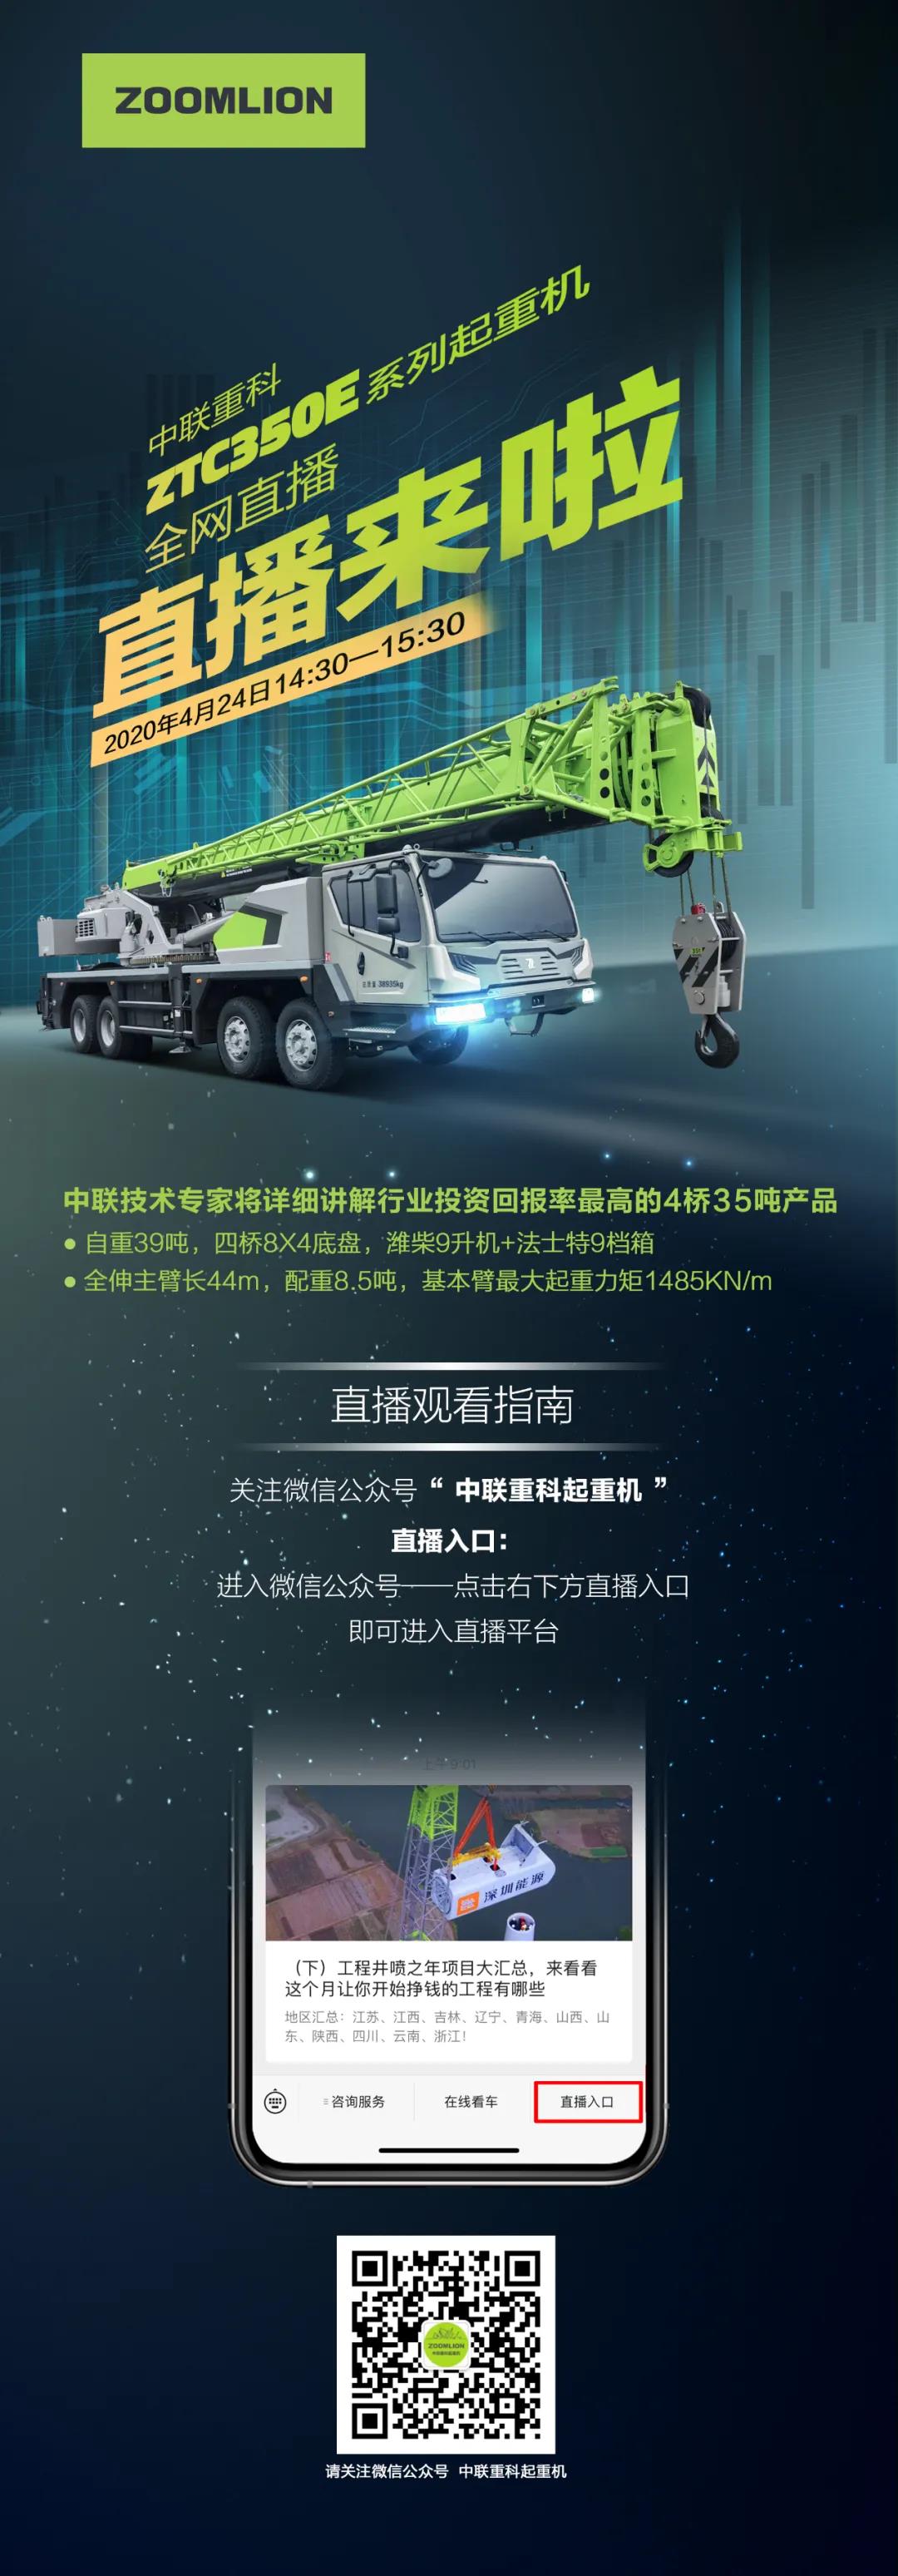 中联重科ZTC350E系列起重机—全网直播